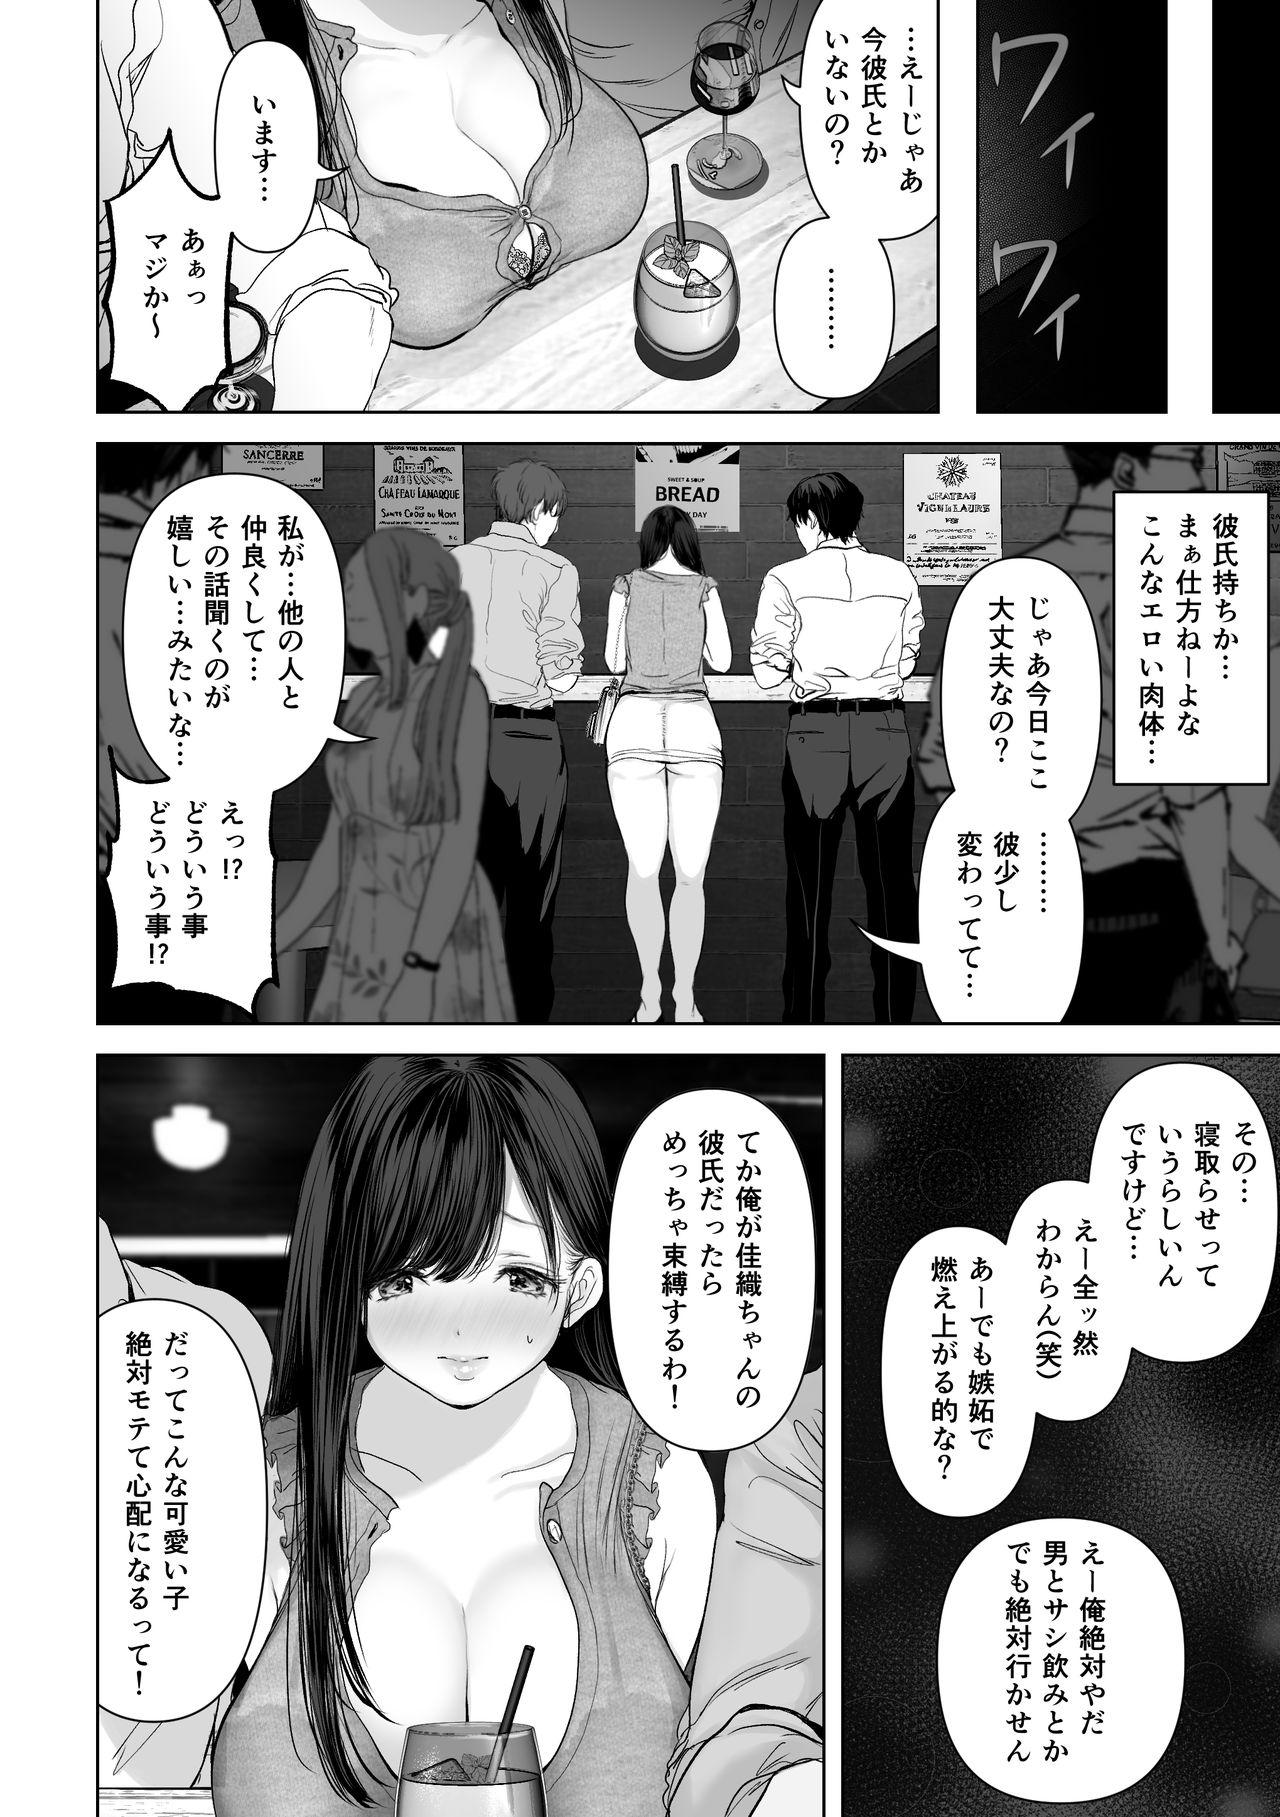 Sperm Anata ga Nozomu nara 2 - Original Threesome - Page 5